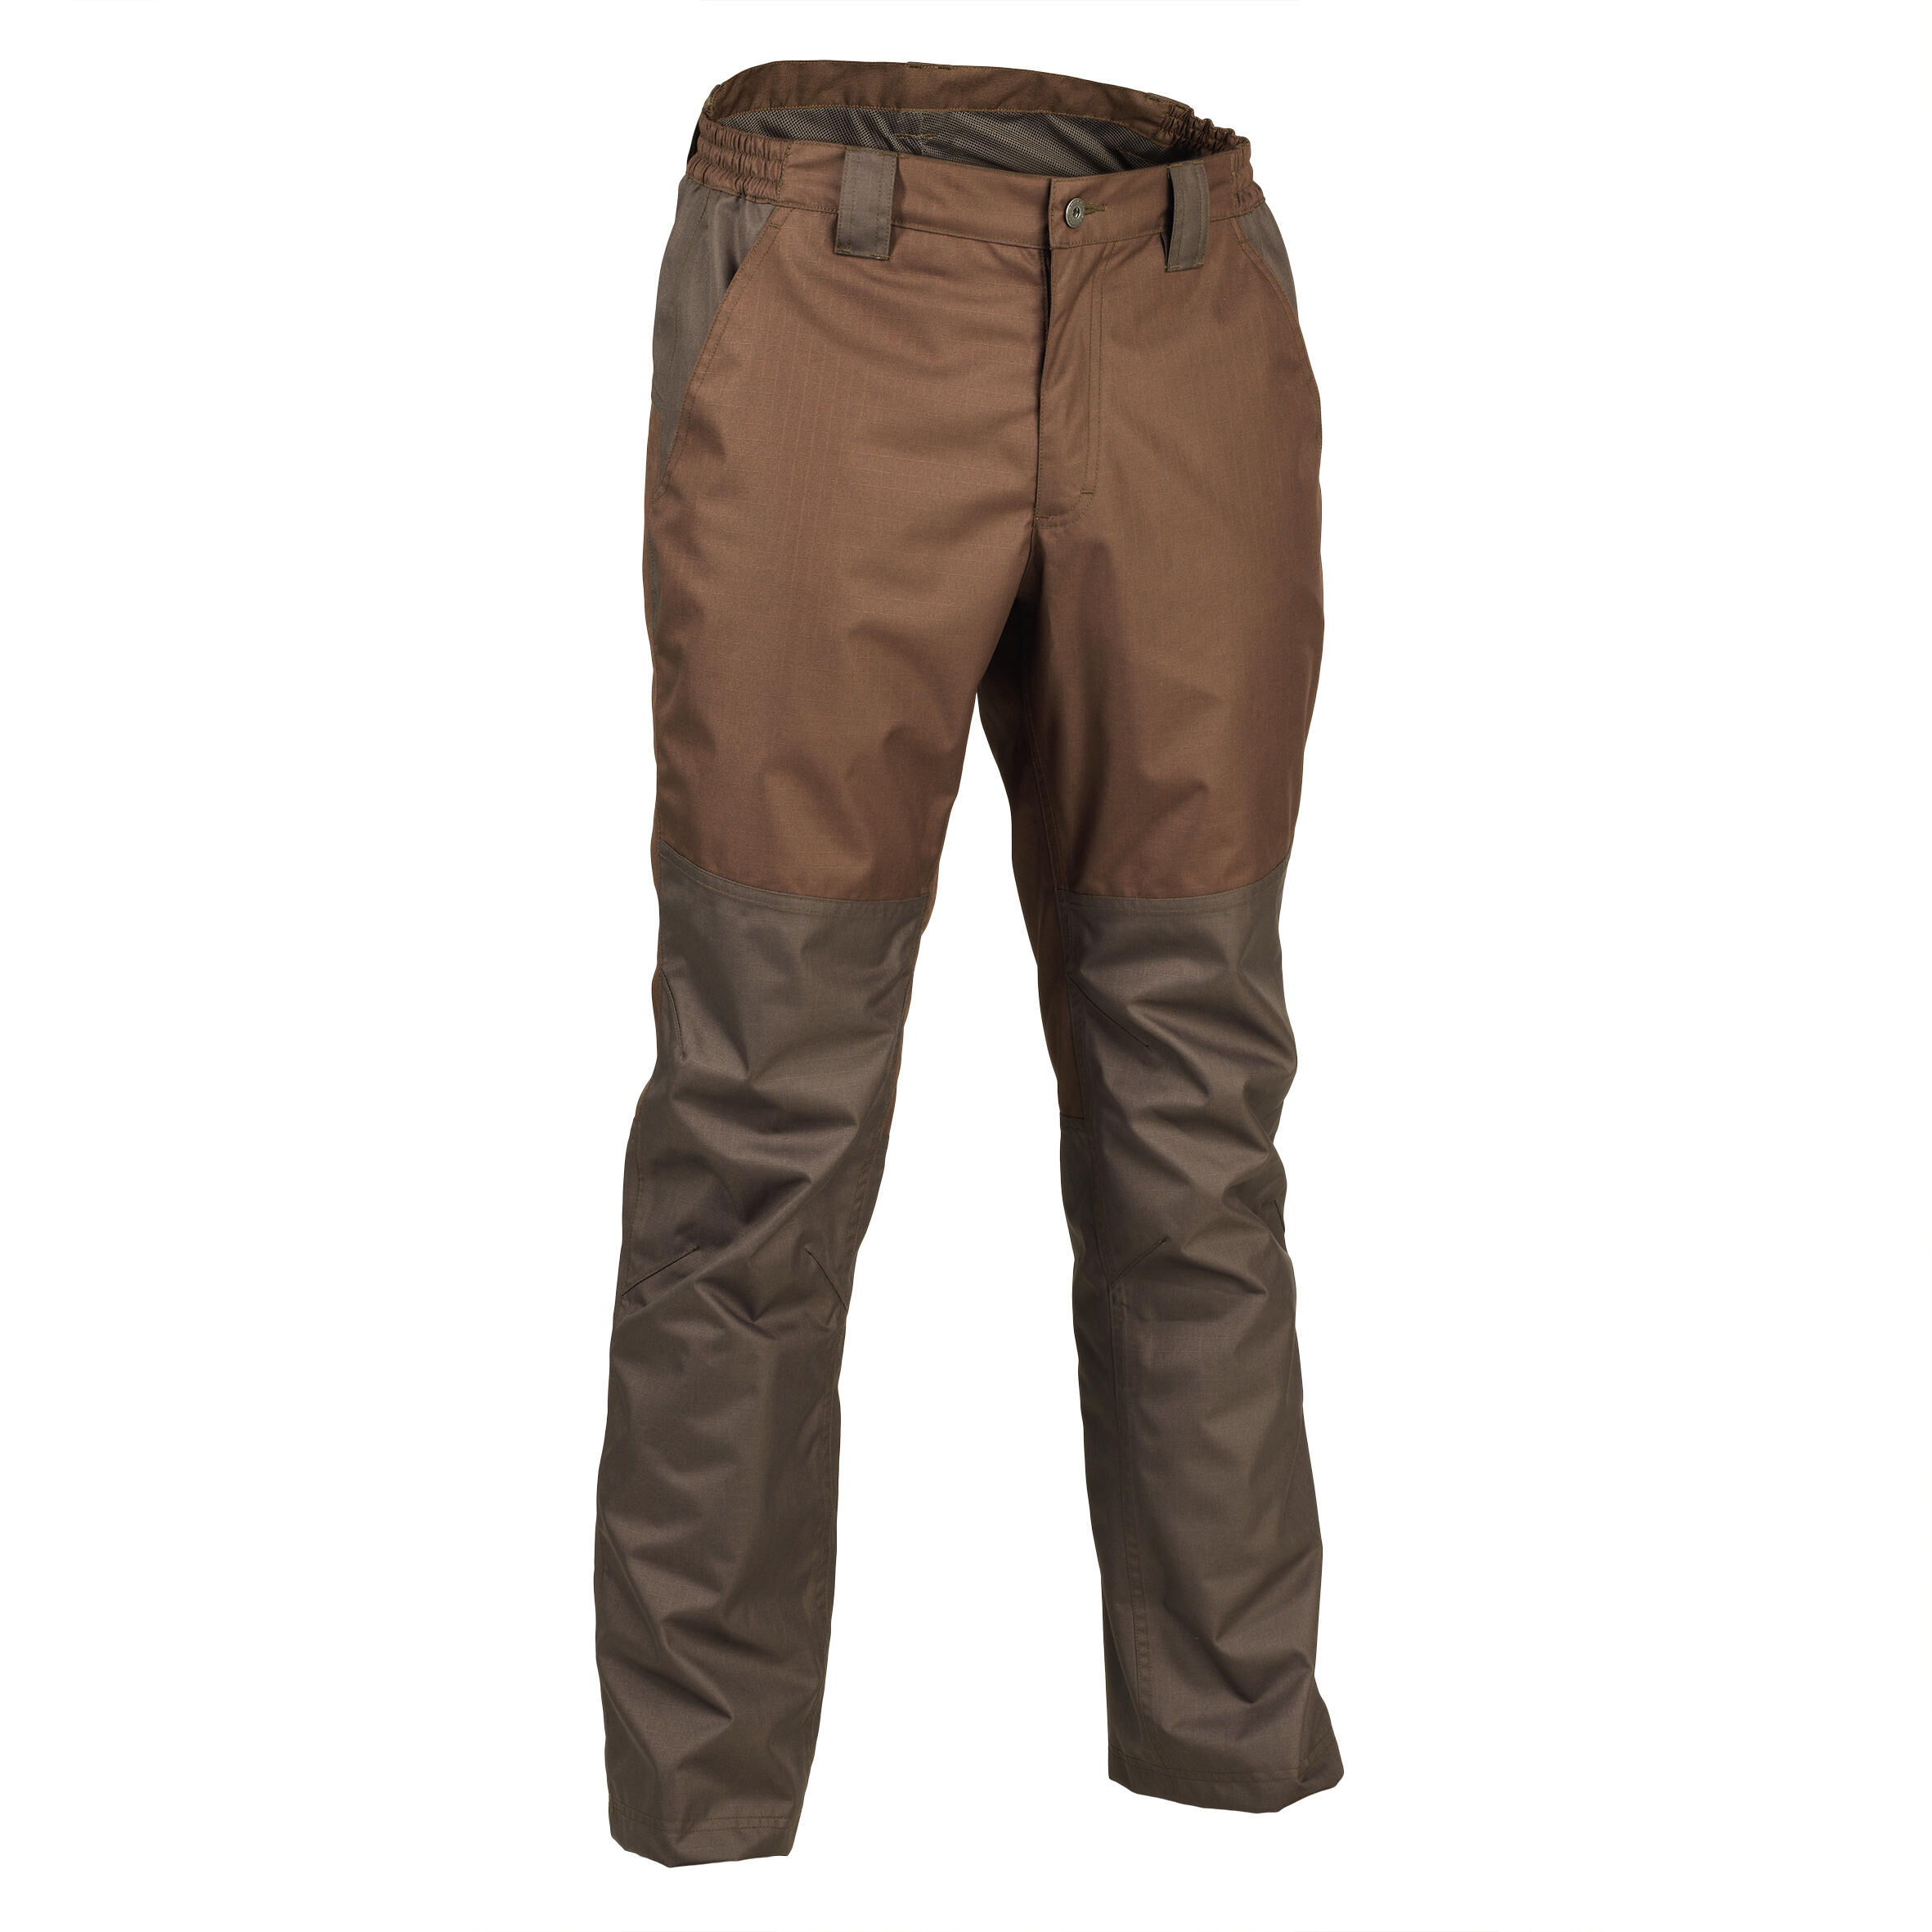 SOLOGNAC Durable Waterproof Trousers - Brown